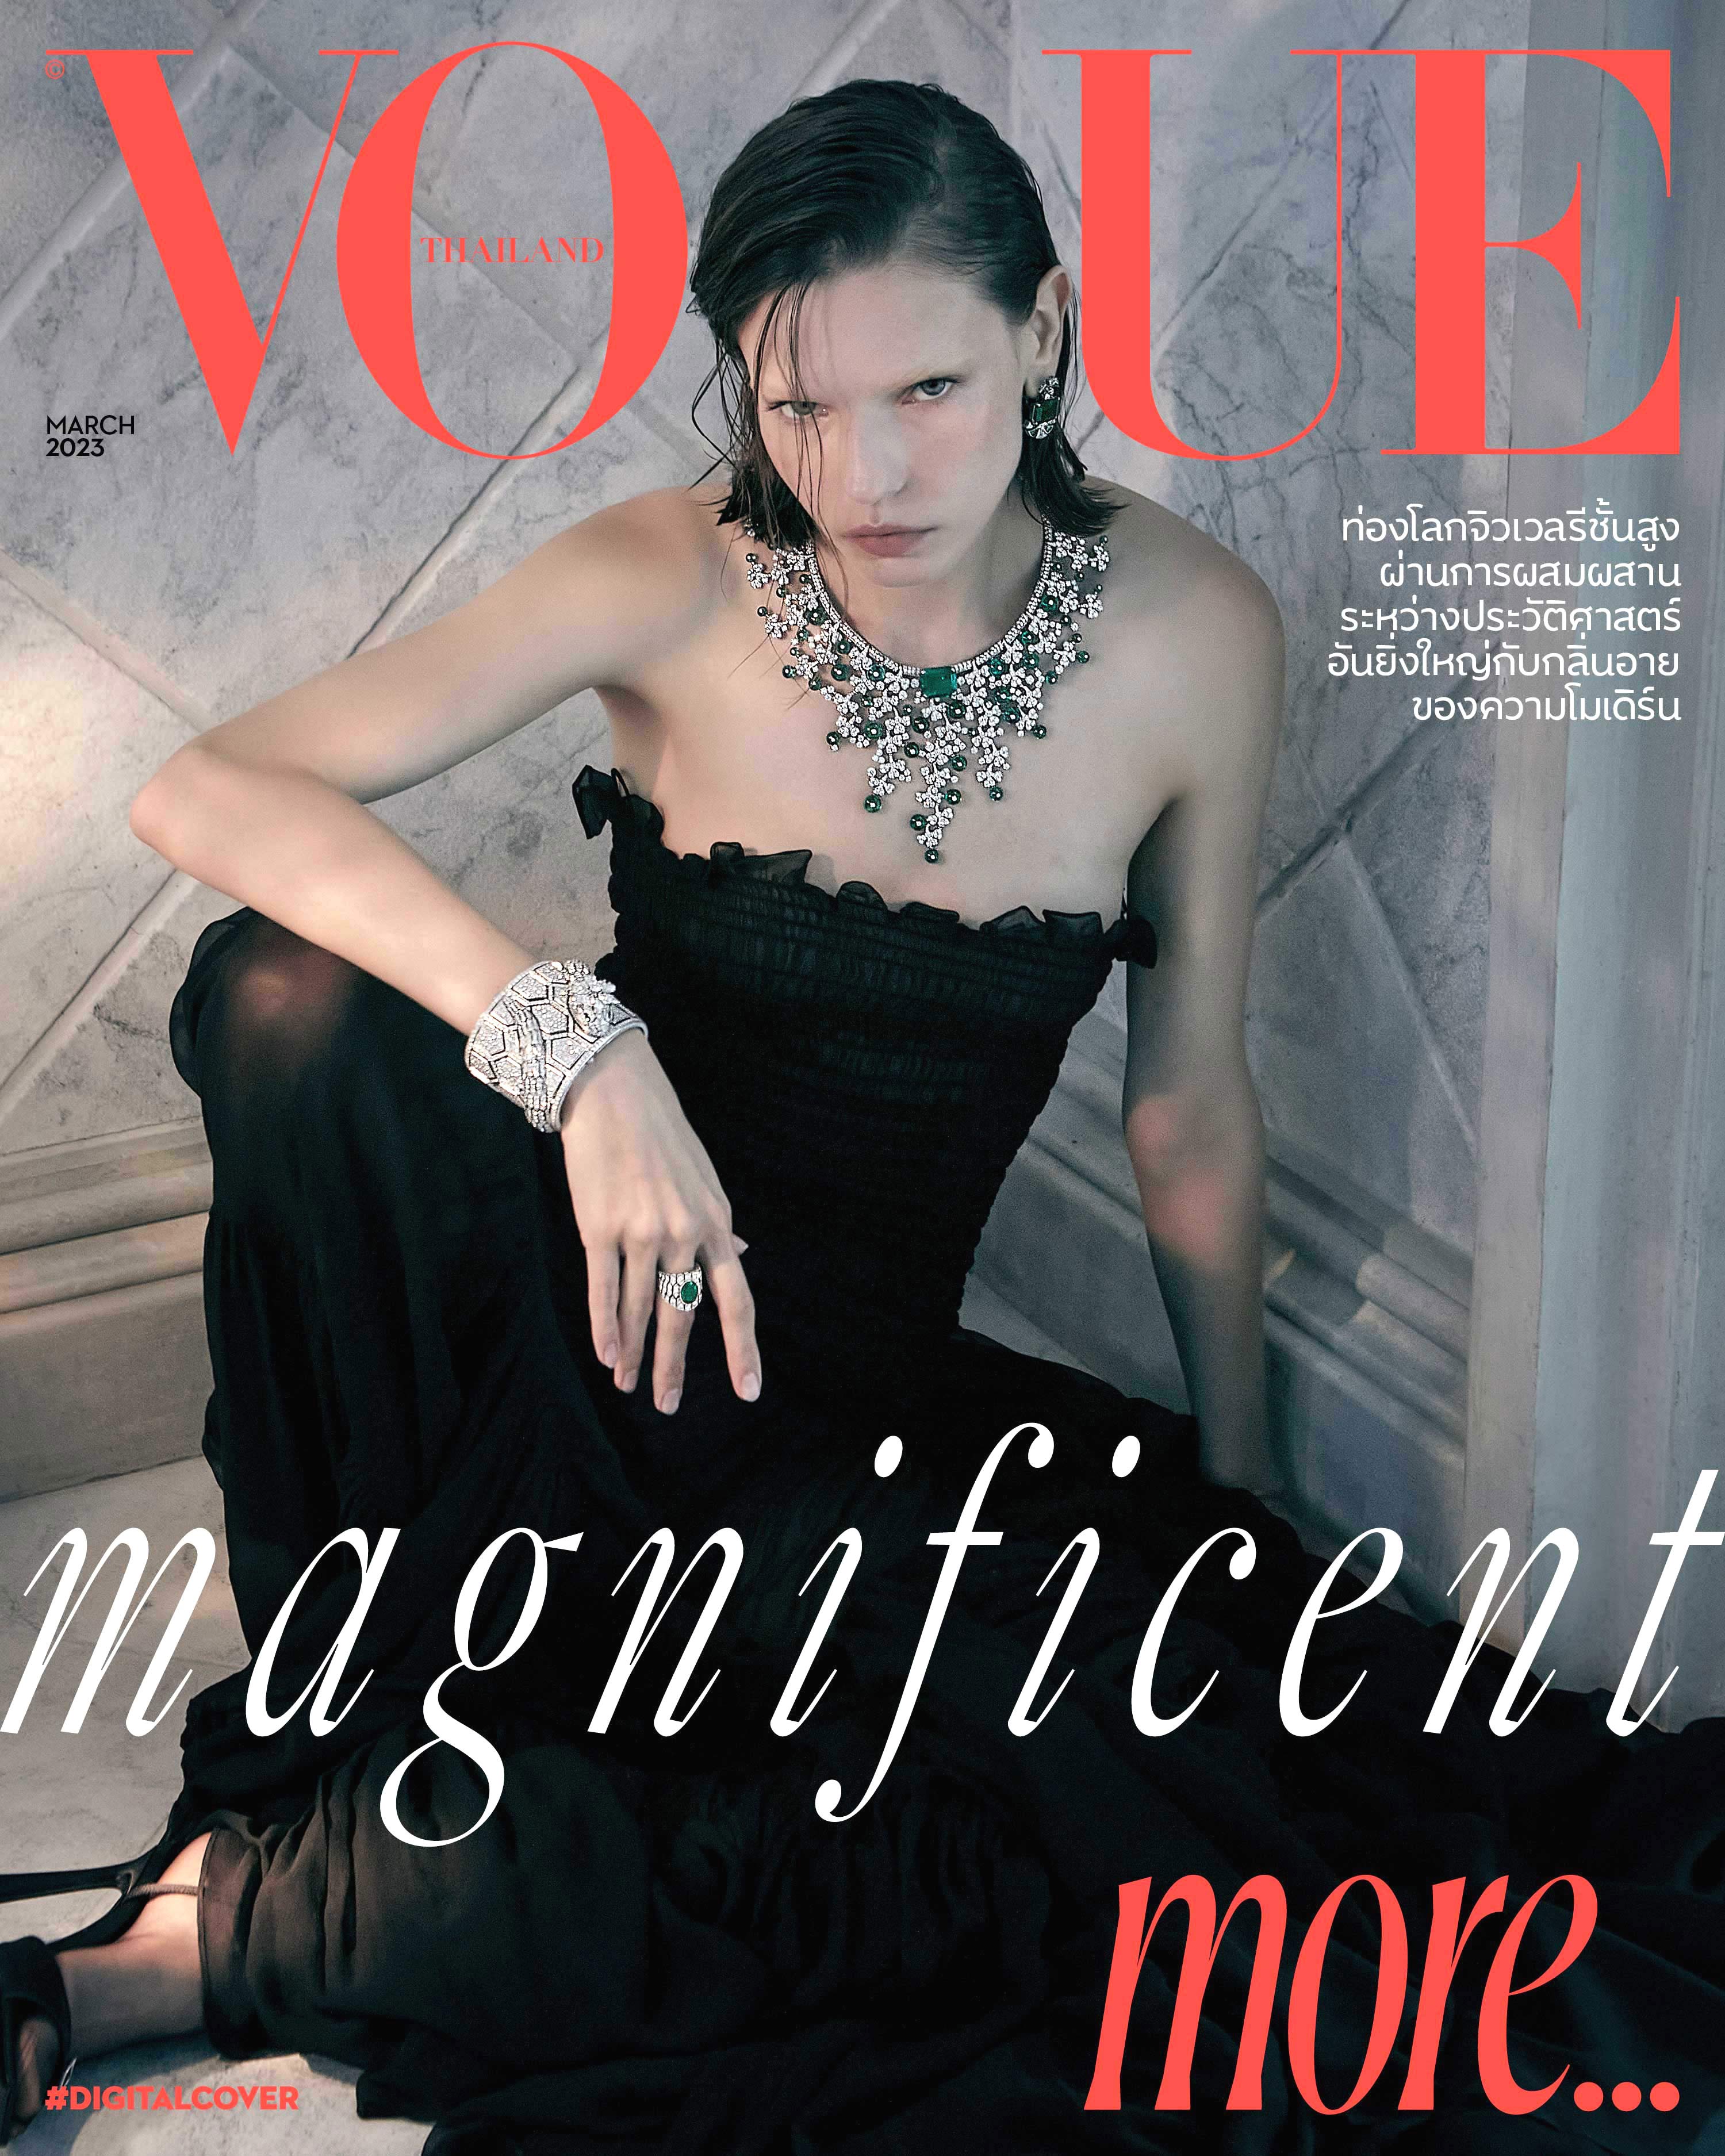 Bvlgari, Bvlgari High Jewelry, Bulgari, Vogue More, #VogueMore